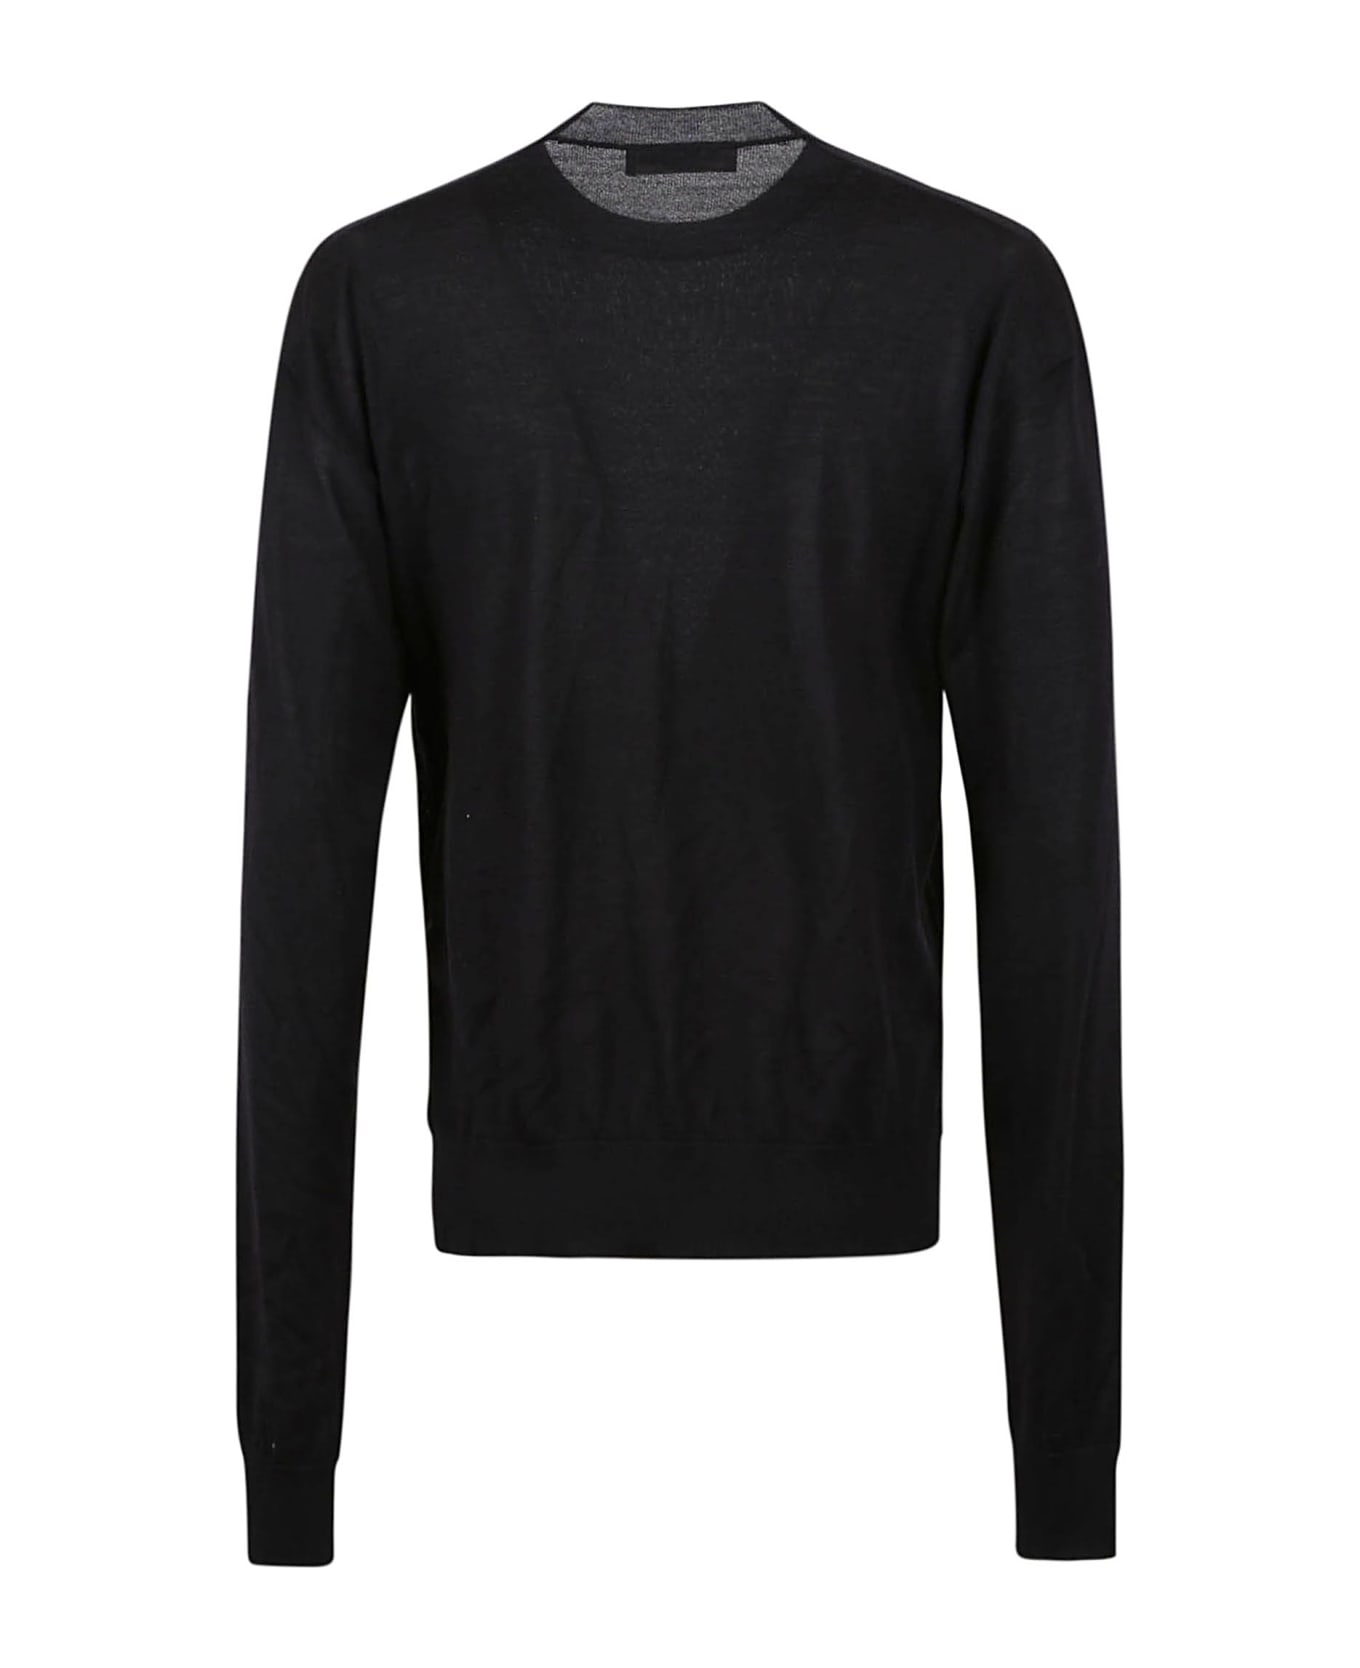 Jil Sander Sweater Cn Ls - Black